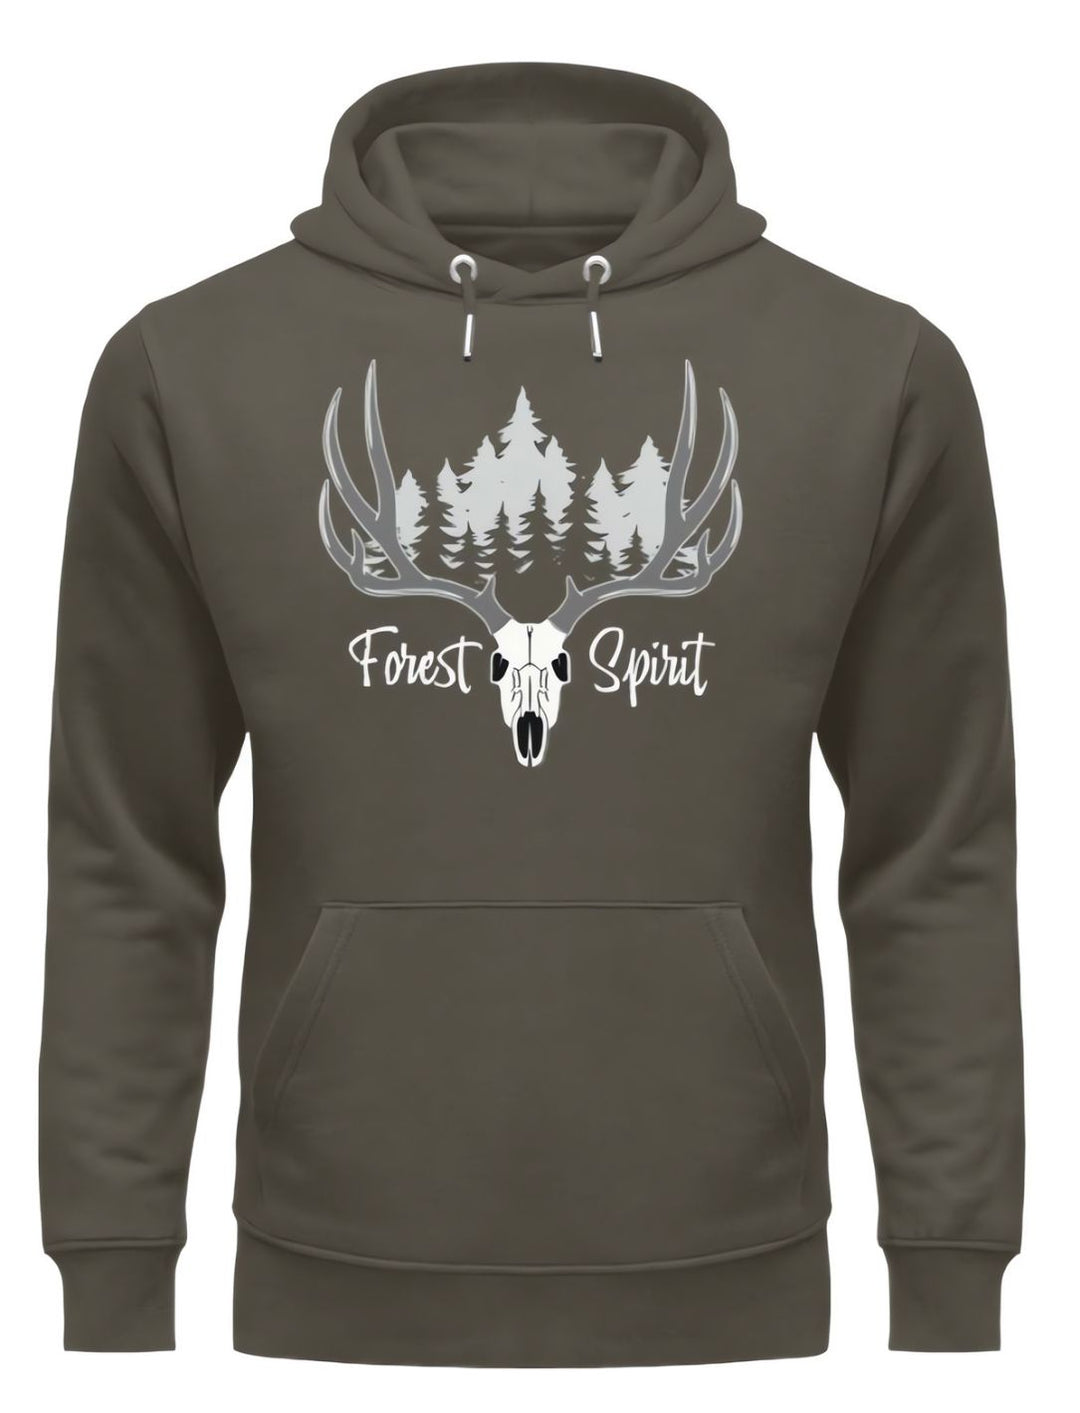 Forest Spirit - Unisex Hoodie - keltisches Design in Khaki. Von Runental.de